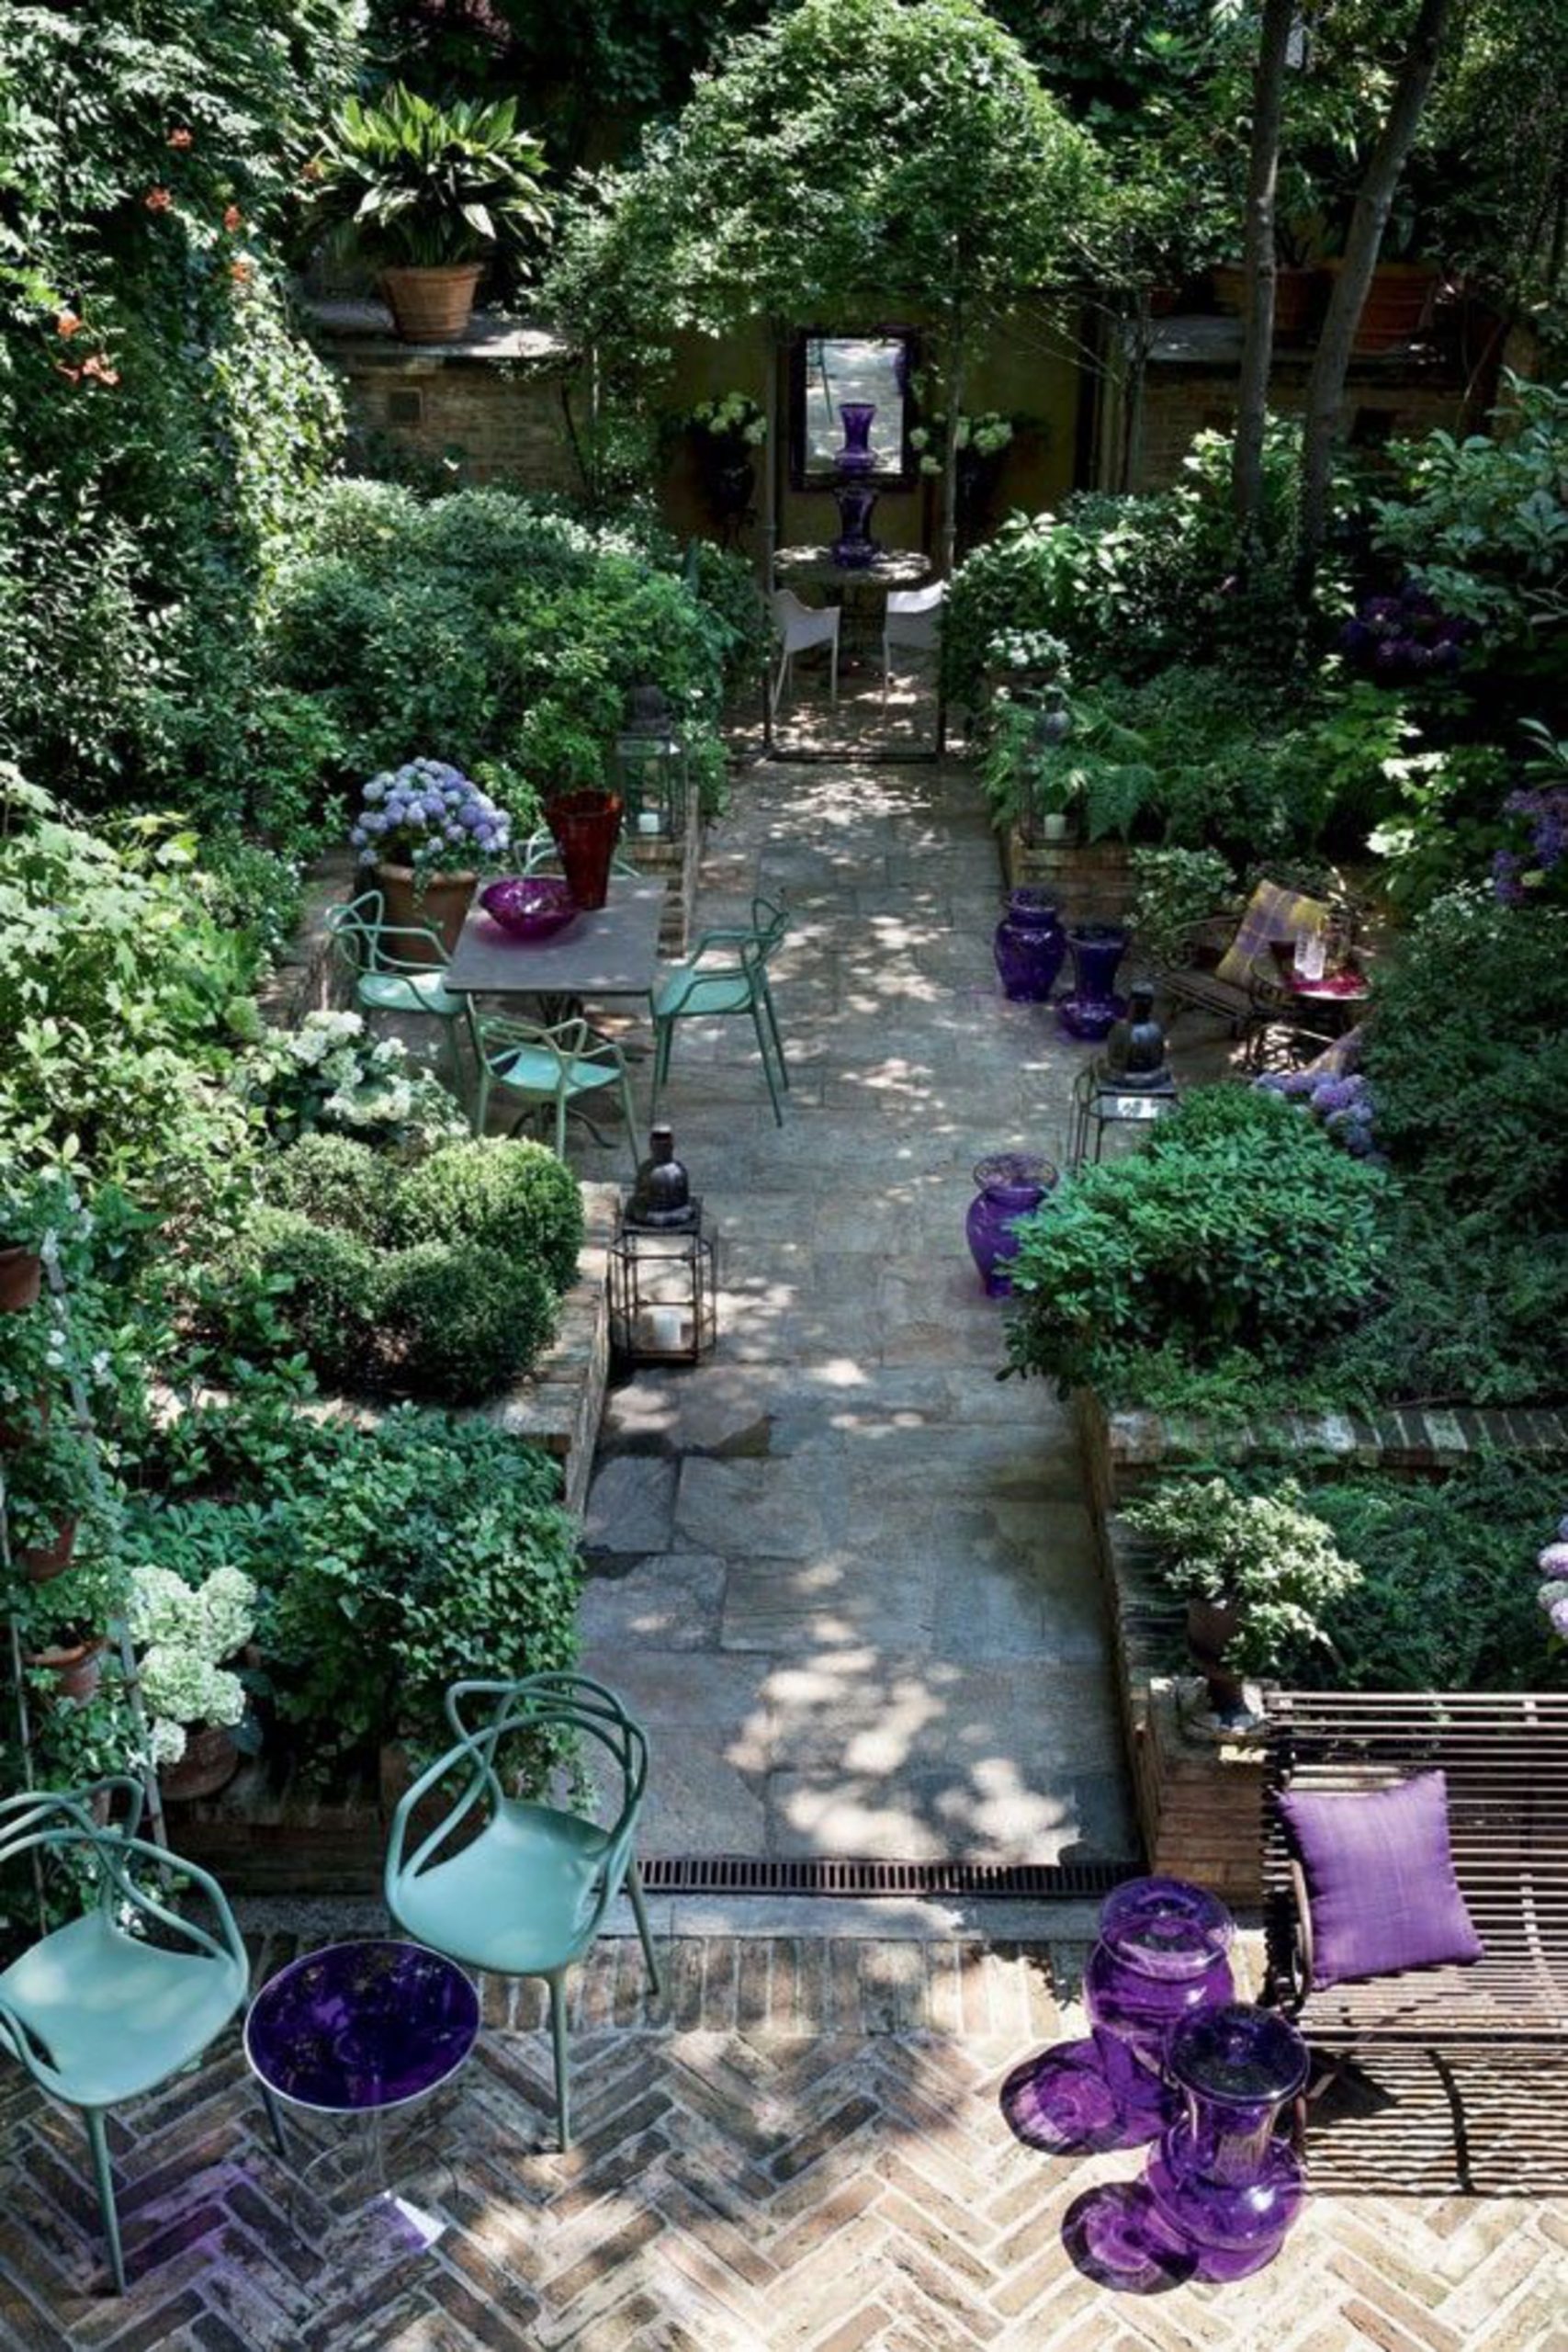 Comment Réussir L'Aménagement De Son Petit Jardin De Ville ... concernant Amenagement Petit Jardin Avec Piscine